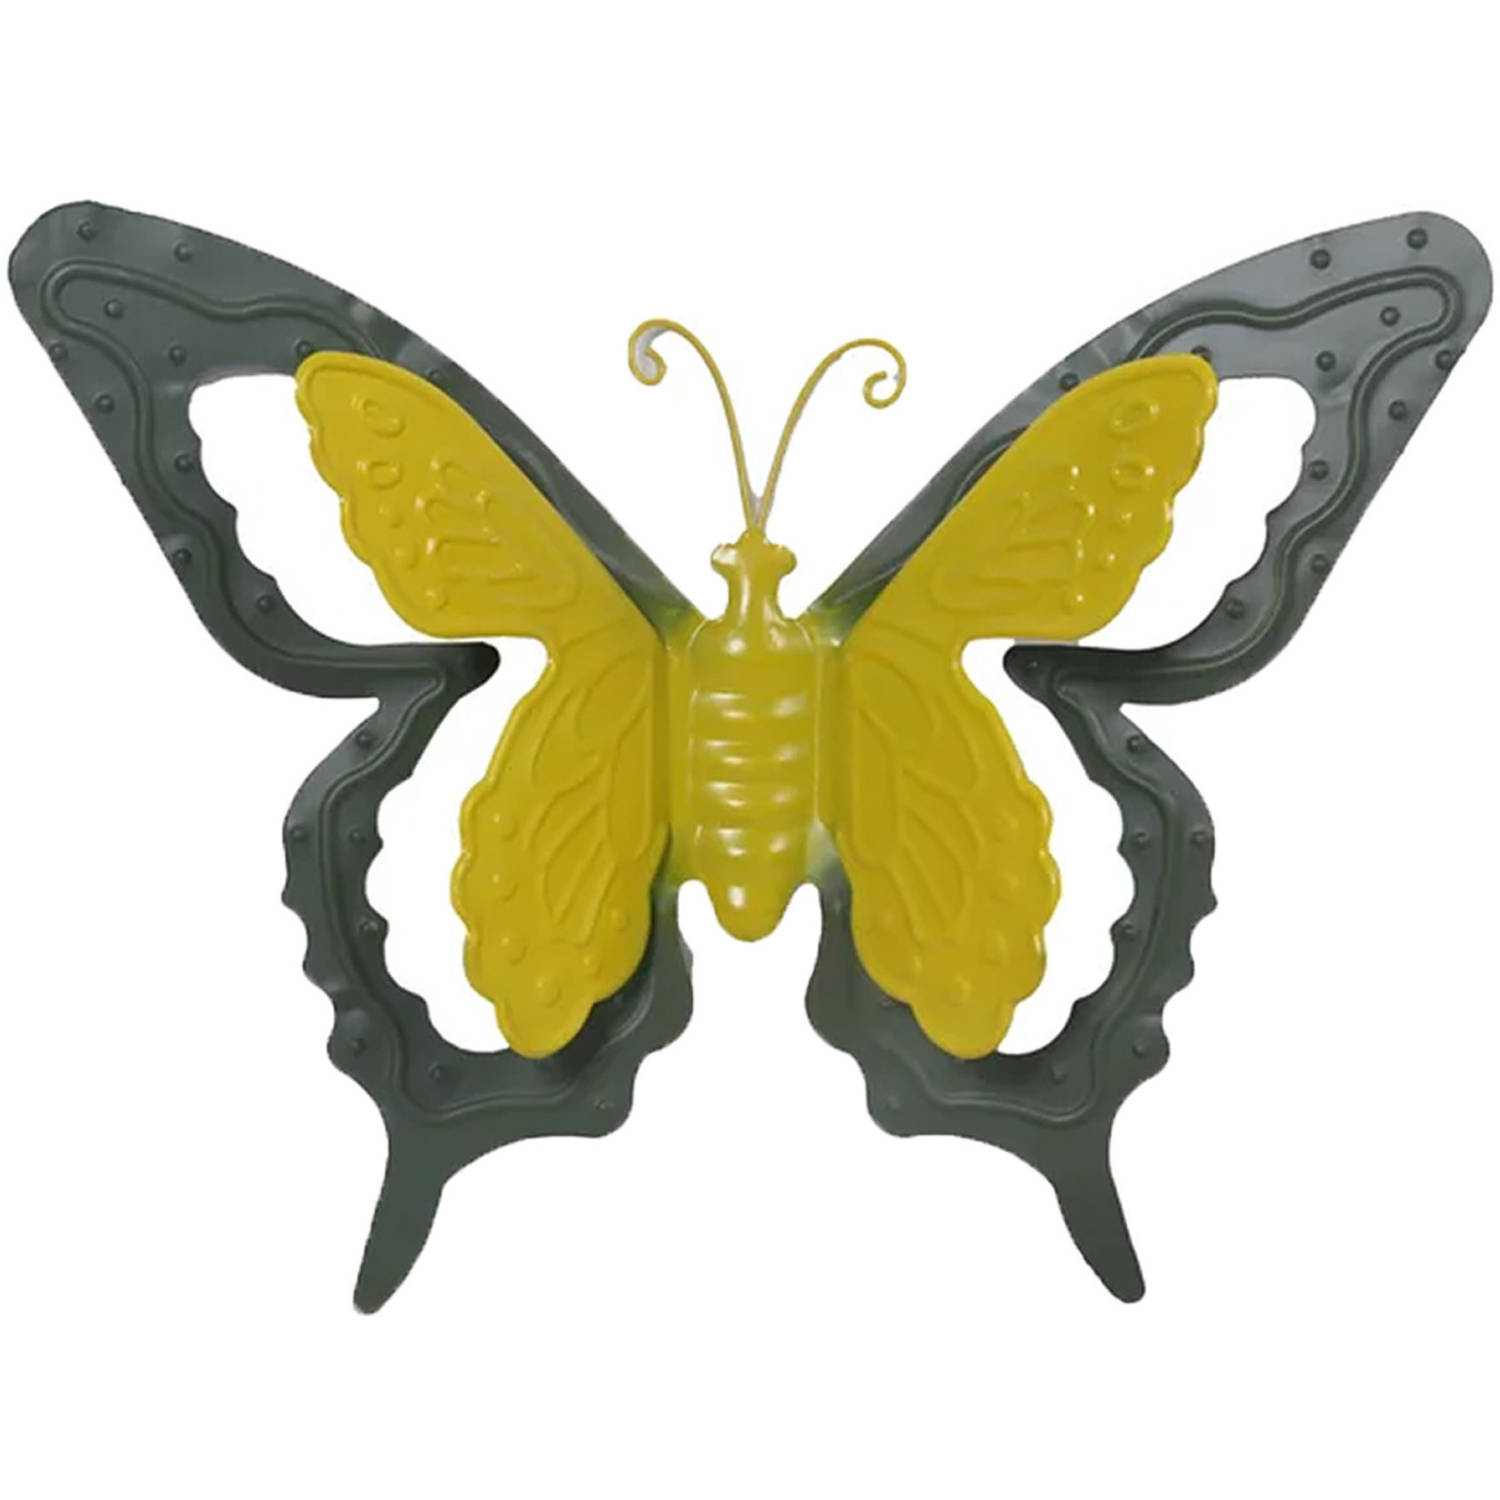 Tuin-schutting decoratie vlinder metaal groen 17 x 13 cm Tuinbeelden